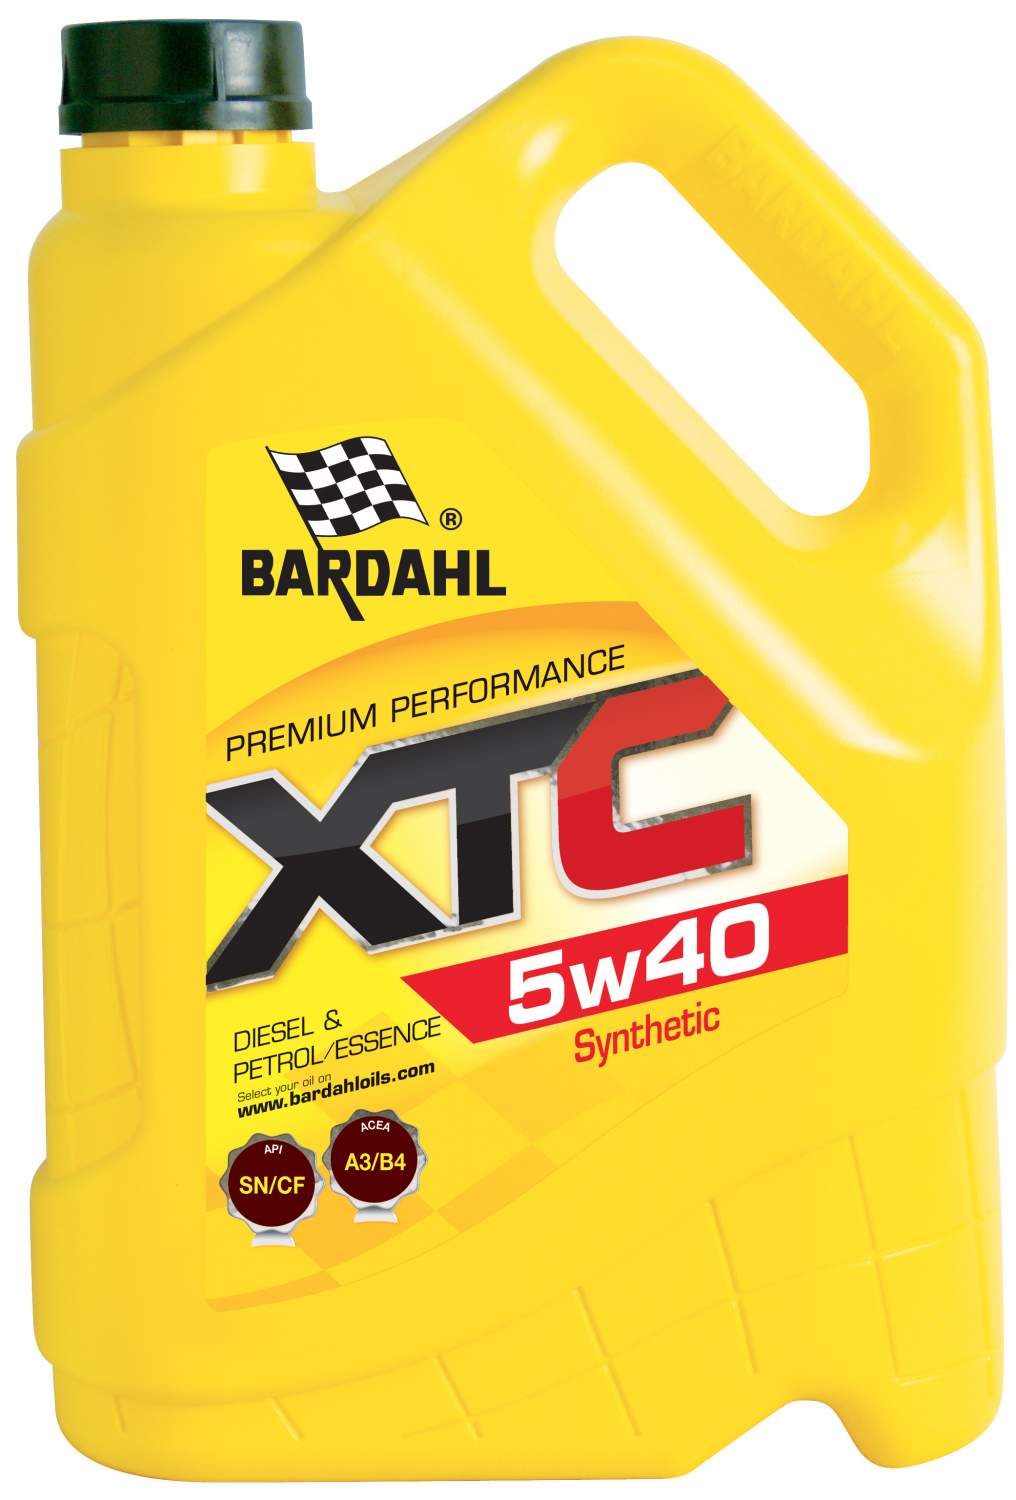 Bardahl моторные масла - купить масло Бардаль, цены на Мегамаркет